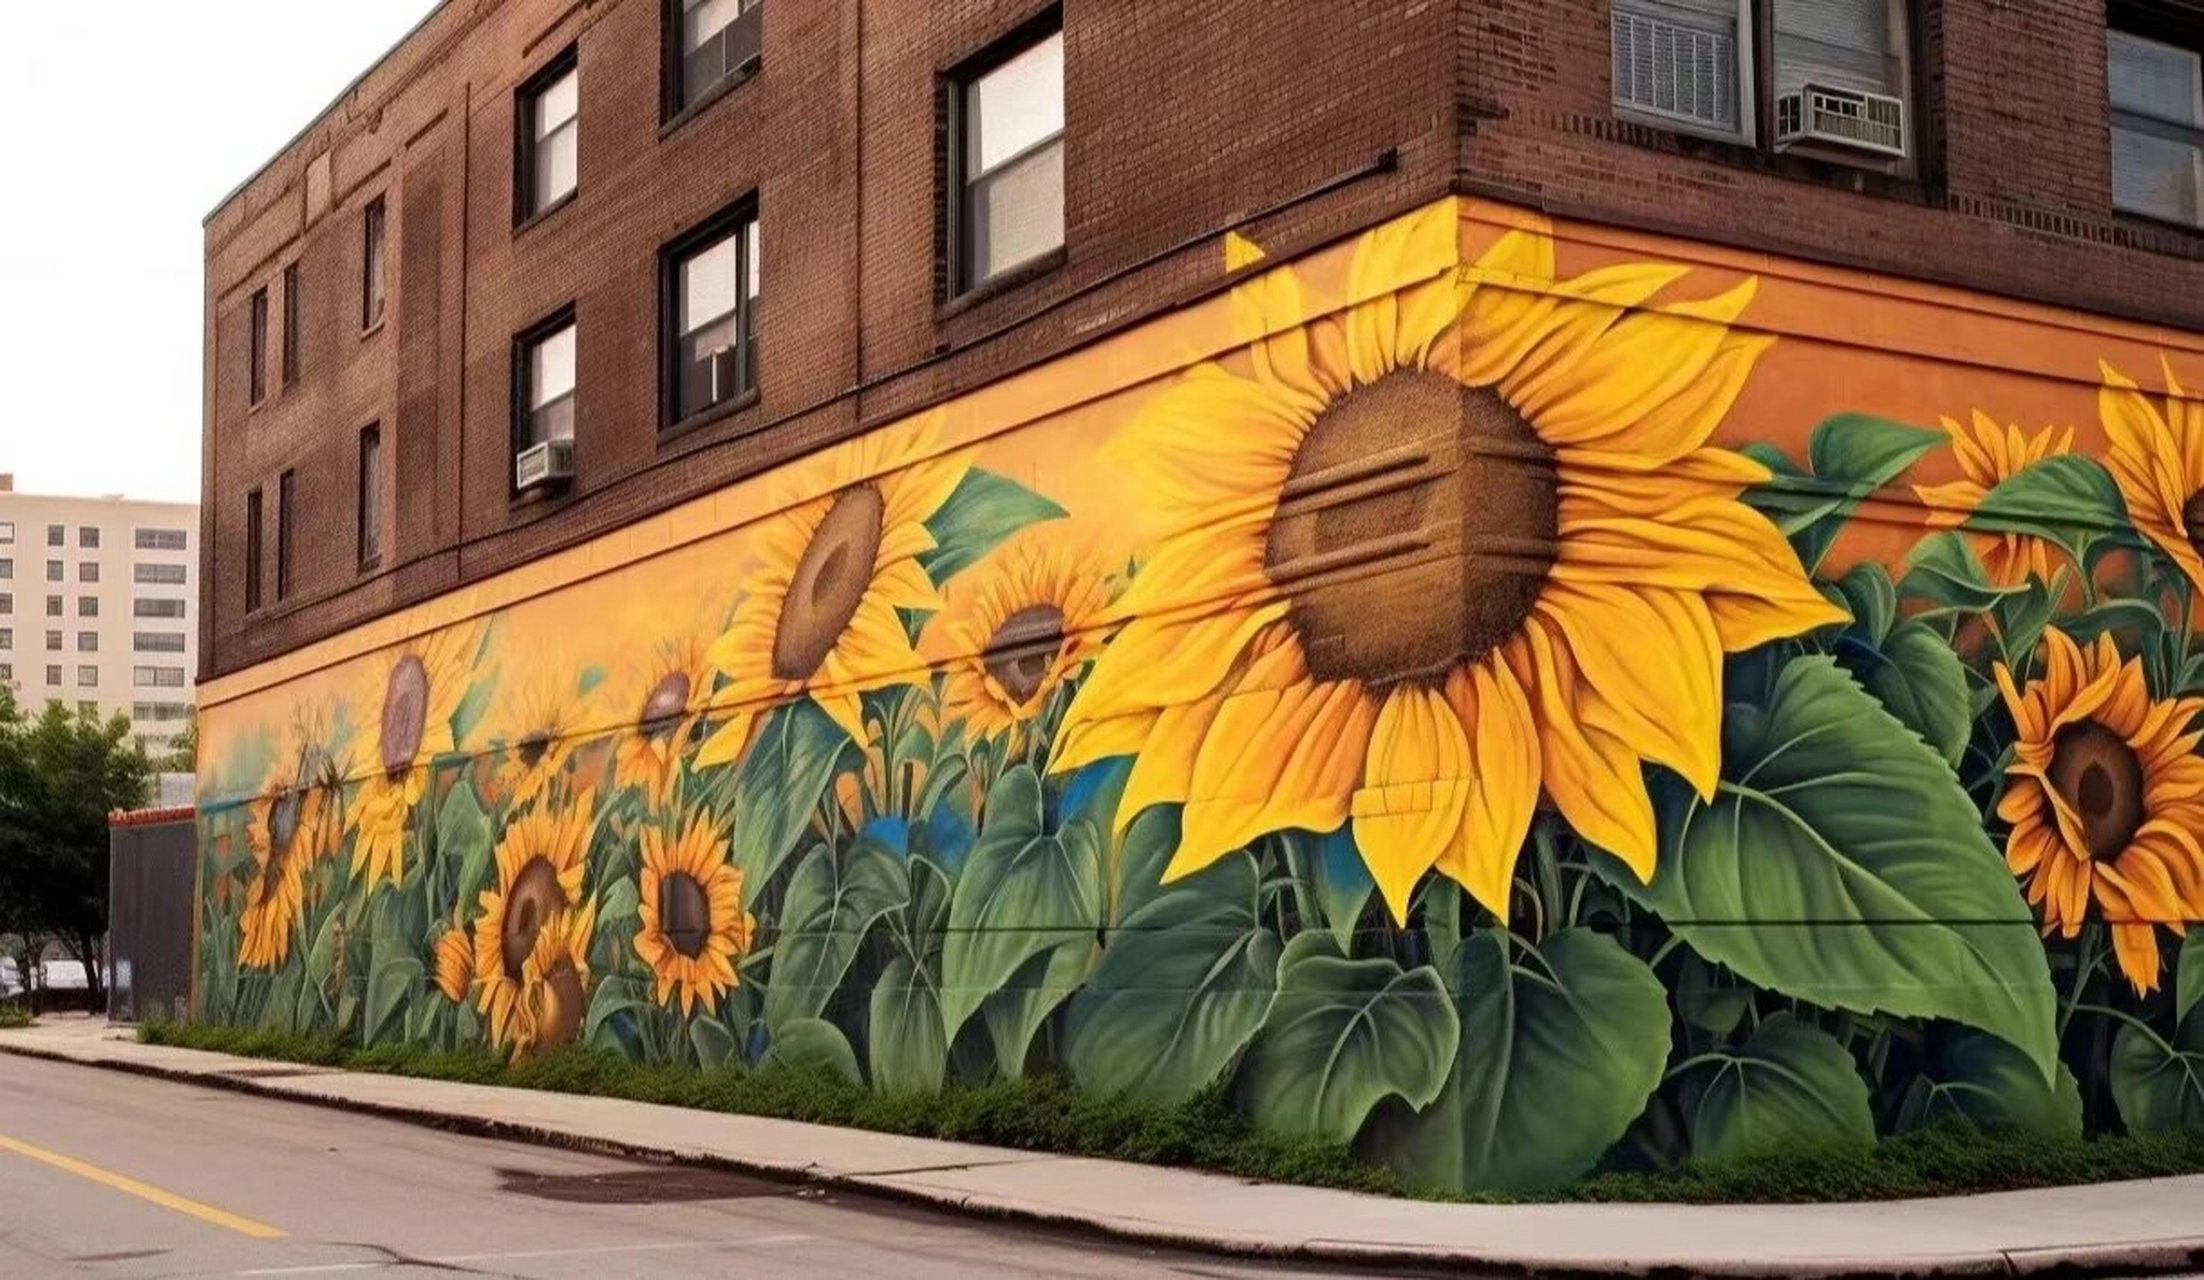 向日葵97花海手绘墙 墙绘向日葵,当你路过一面满是花朵的墙会不会